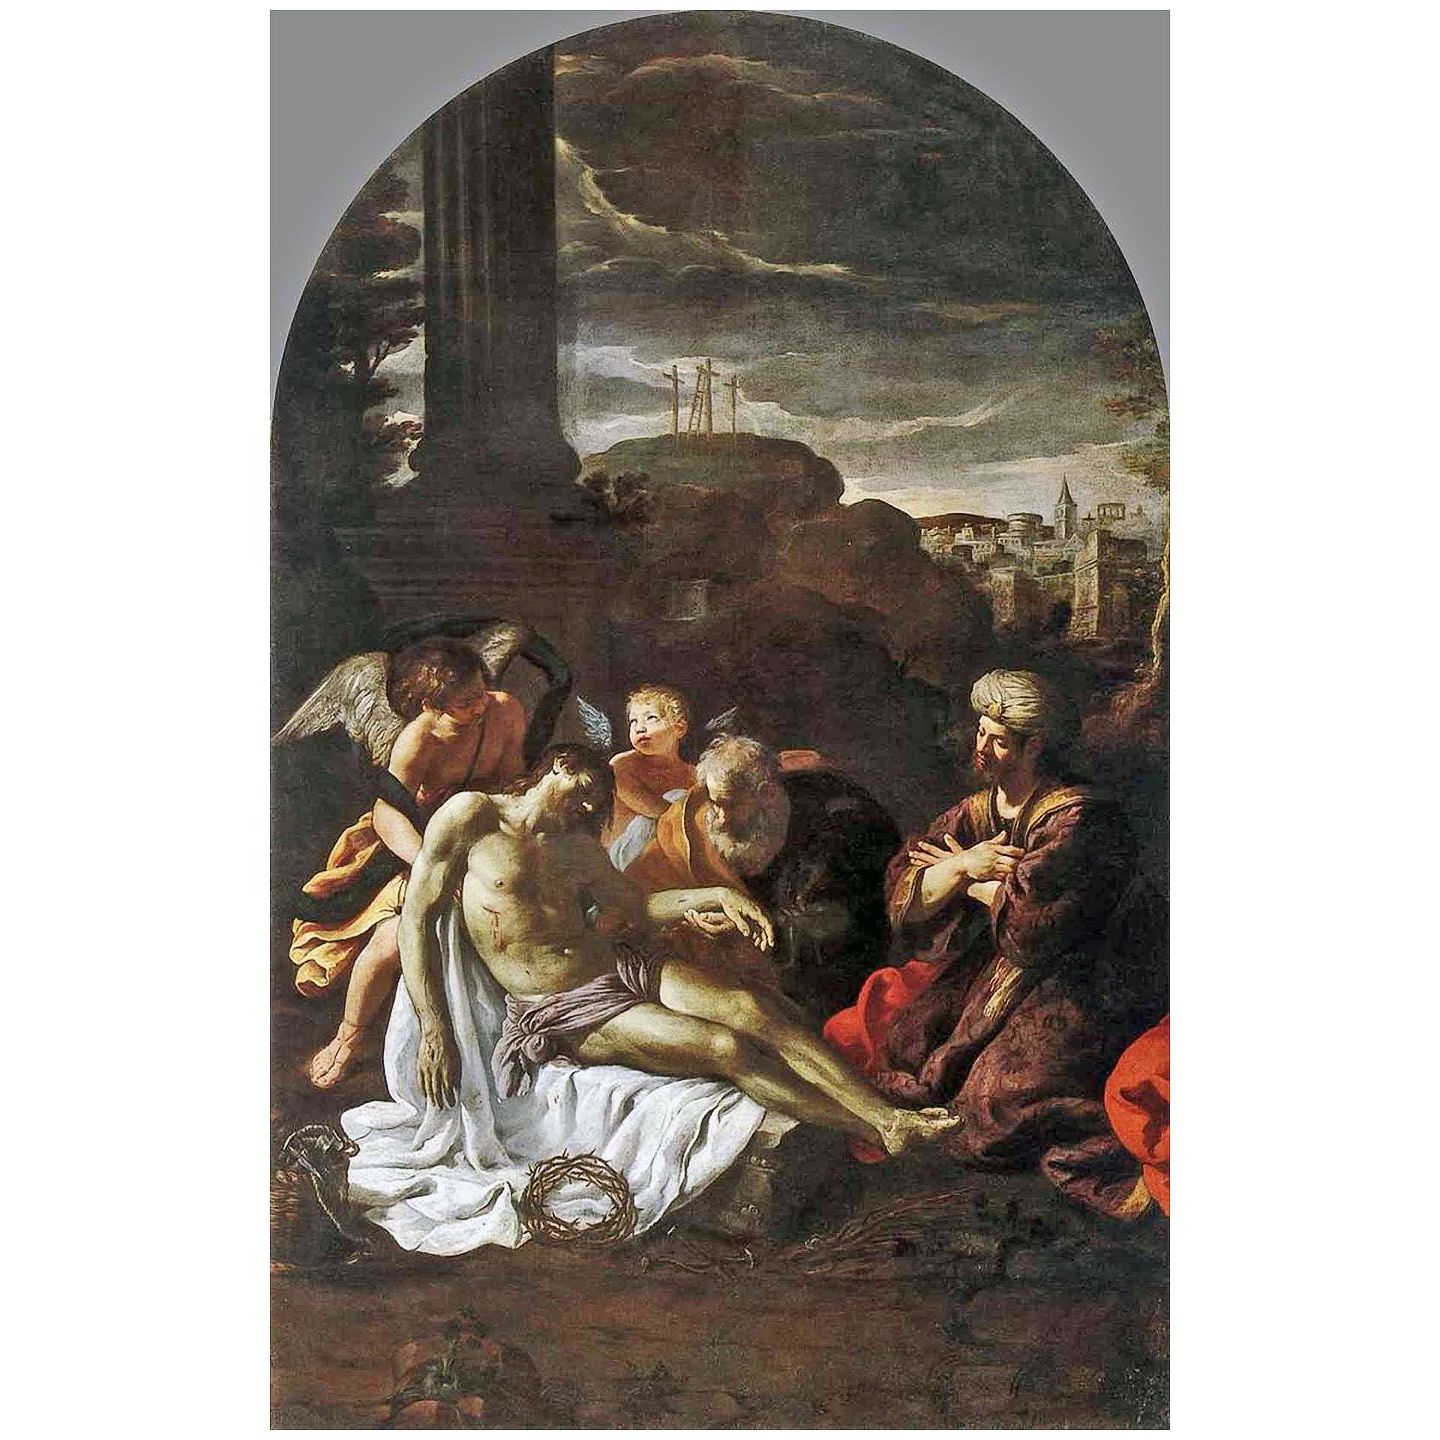 Pietro da Cortona. Pieta. 1620-1625. Santa Chiara, Cortona